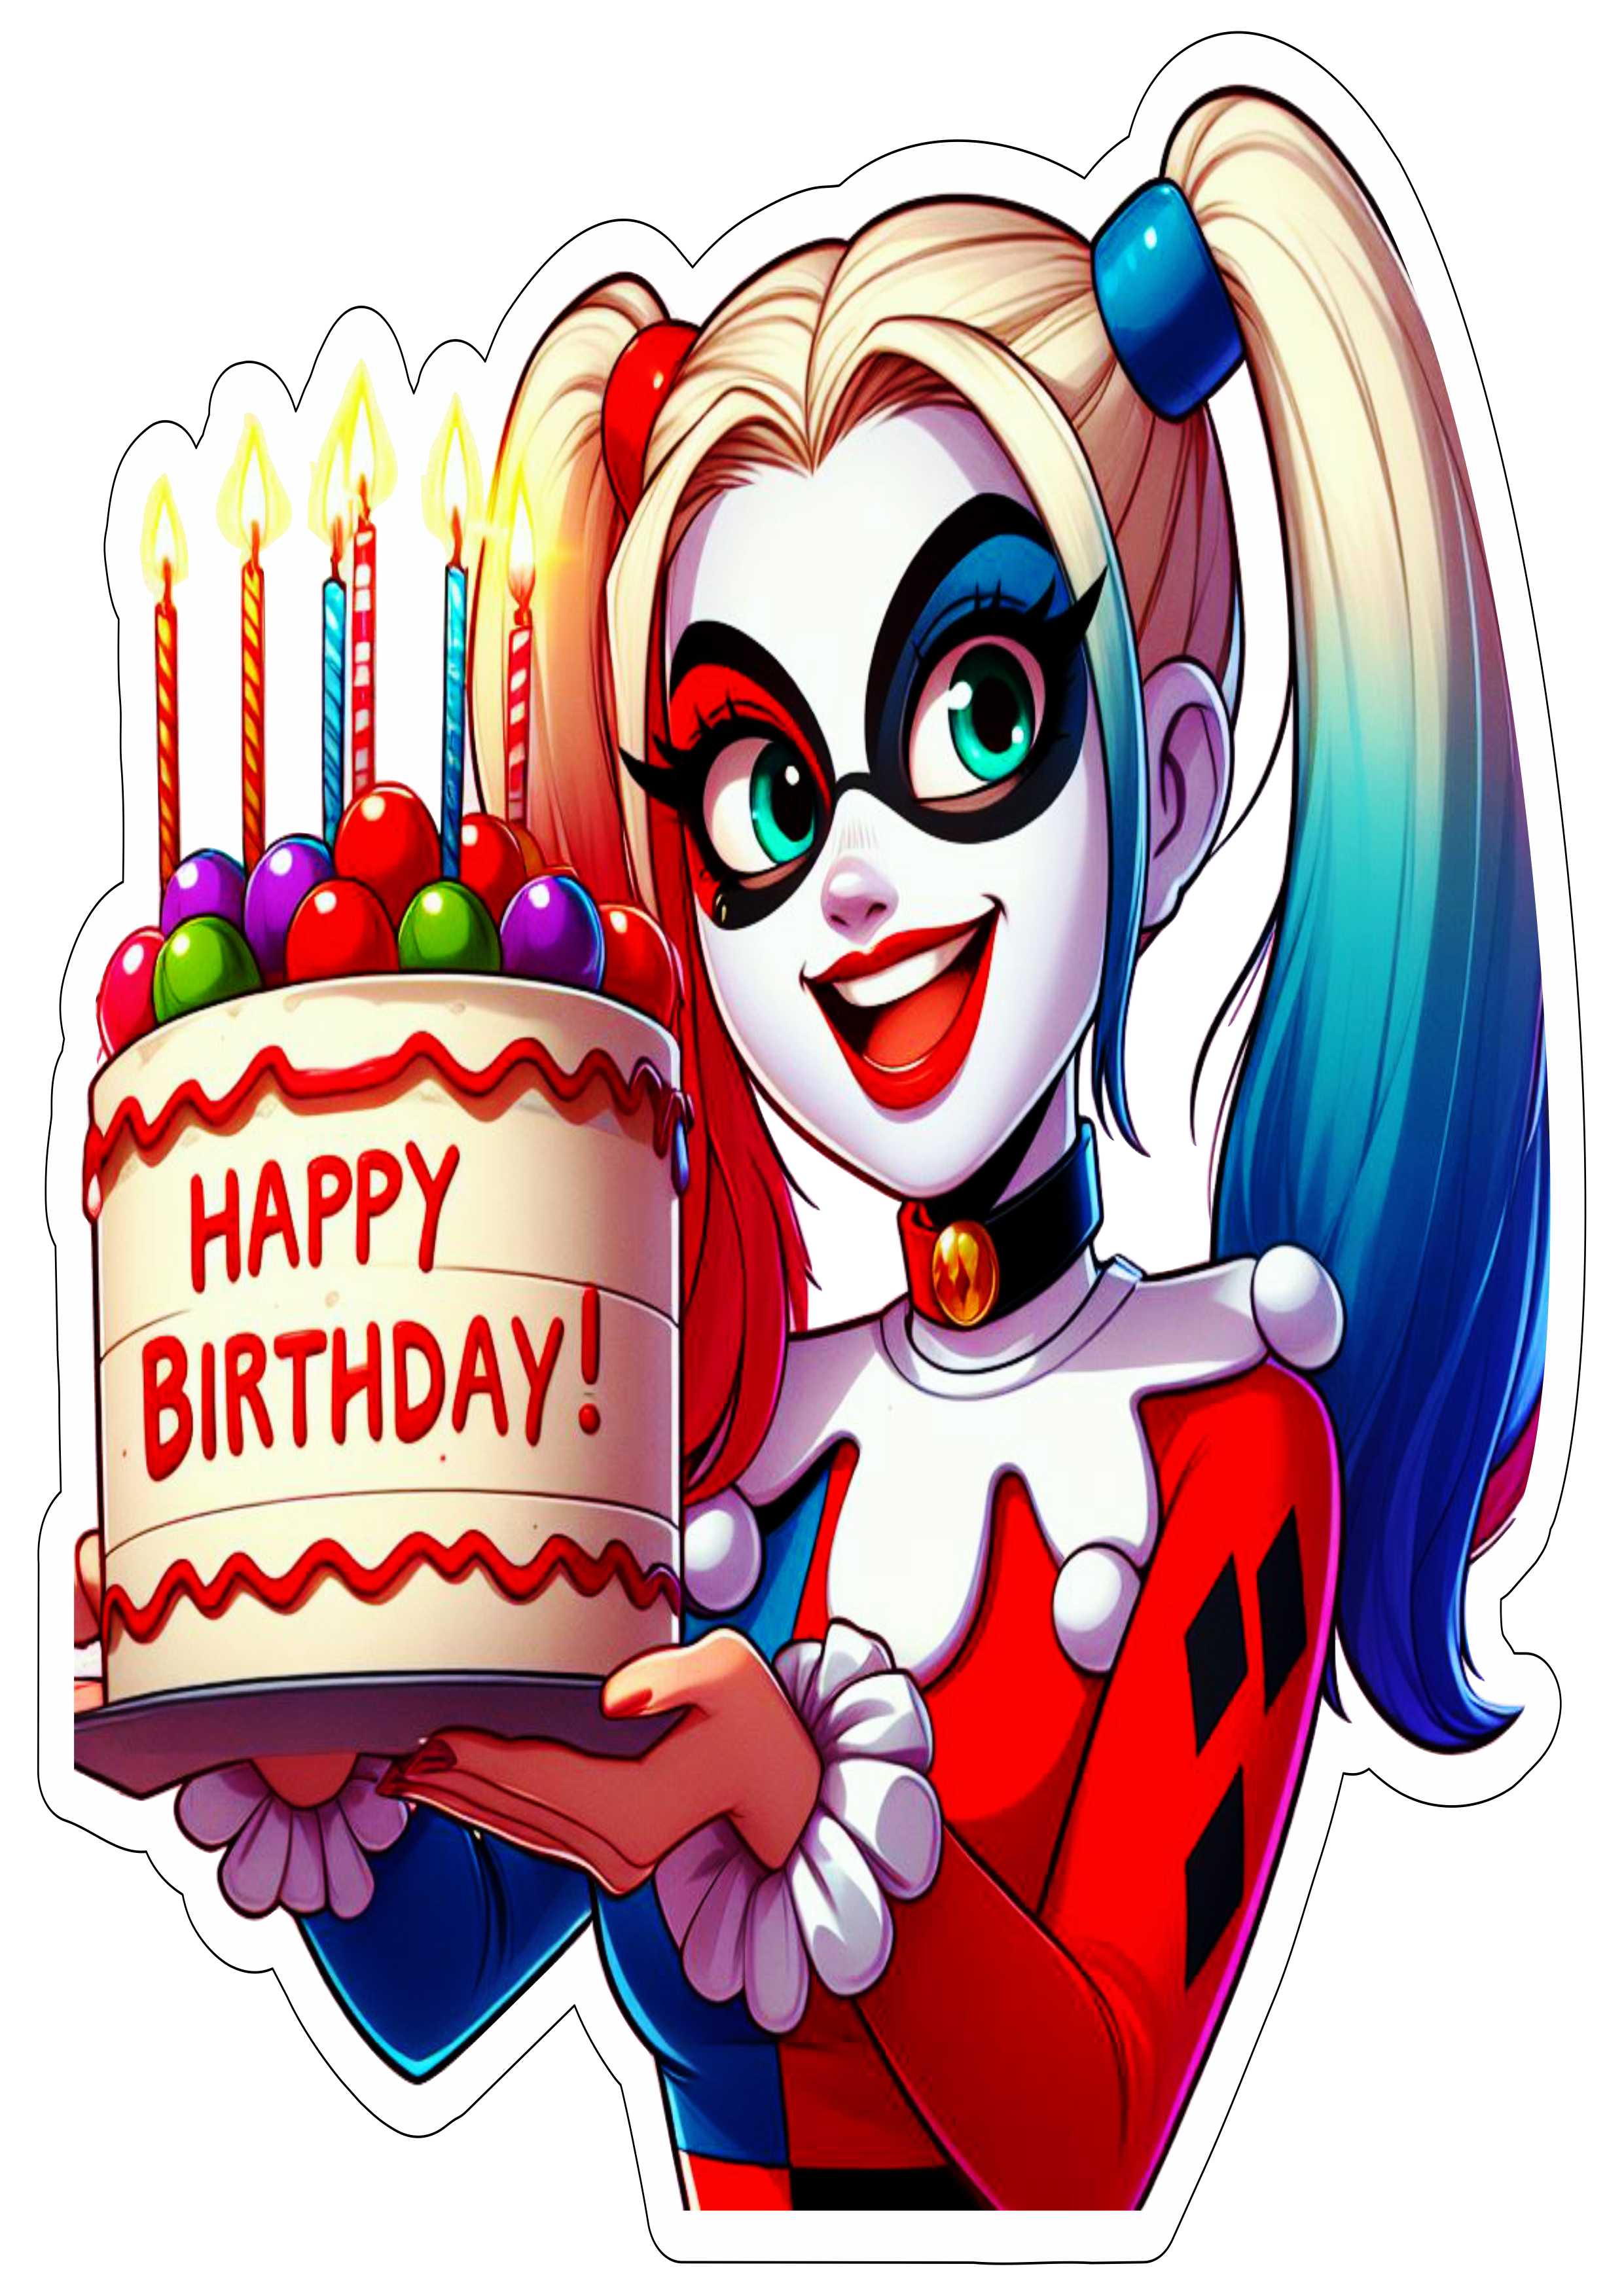 Arlequina desenho colorido balões de festa e bolo de aniversário fundo transparente happy birthday png